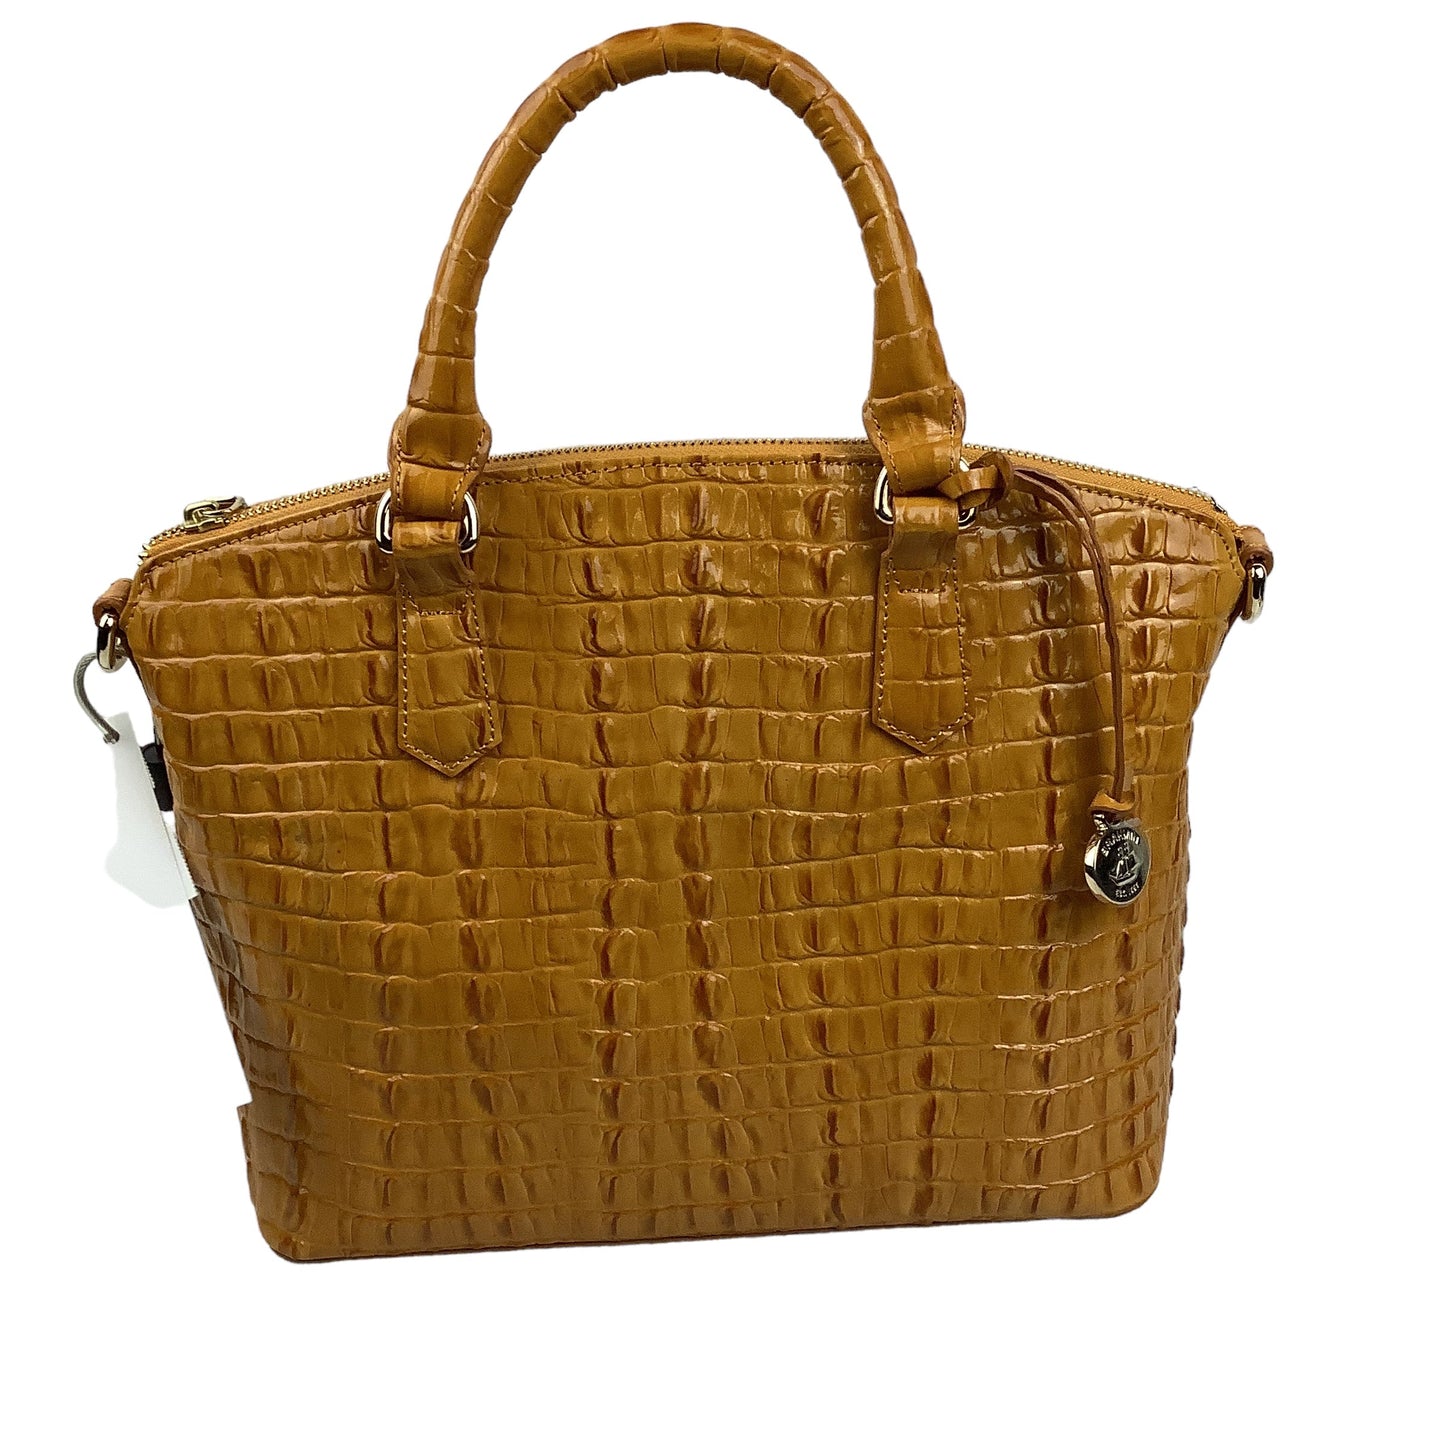 Handbag Designer Brahmin, Size Medium